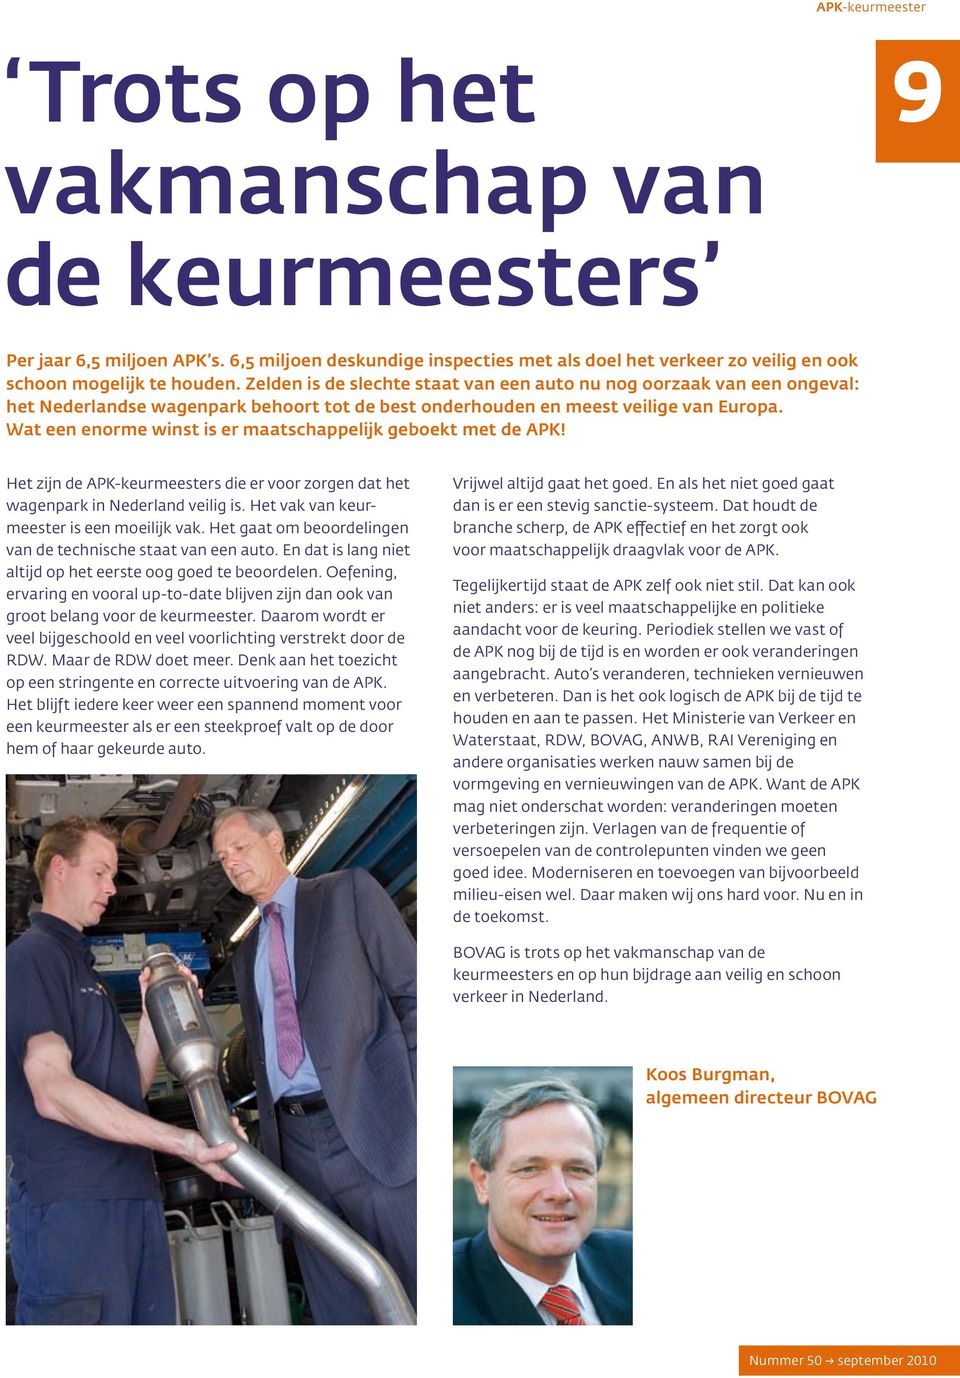 Wat een enorme winst is er maatschappelijk geboekt met de APK! Het zijn de APK-keurmeesters die er voor zorgen dat het wagenpark in Nederland veilig is. Het vak van keurmeester is een moeilijk vak.